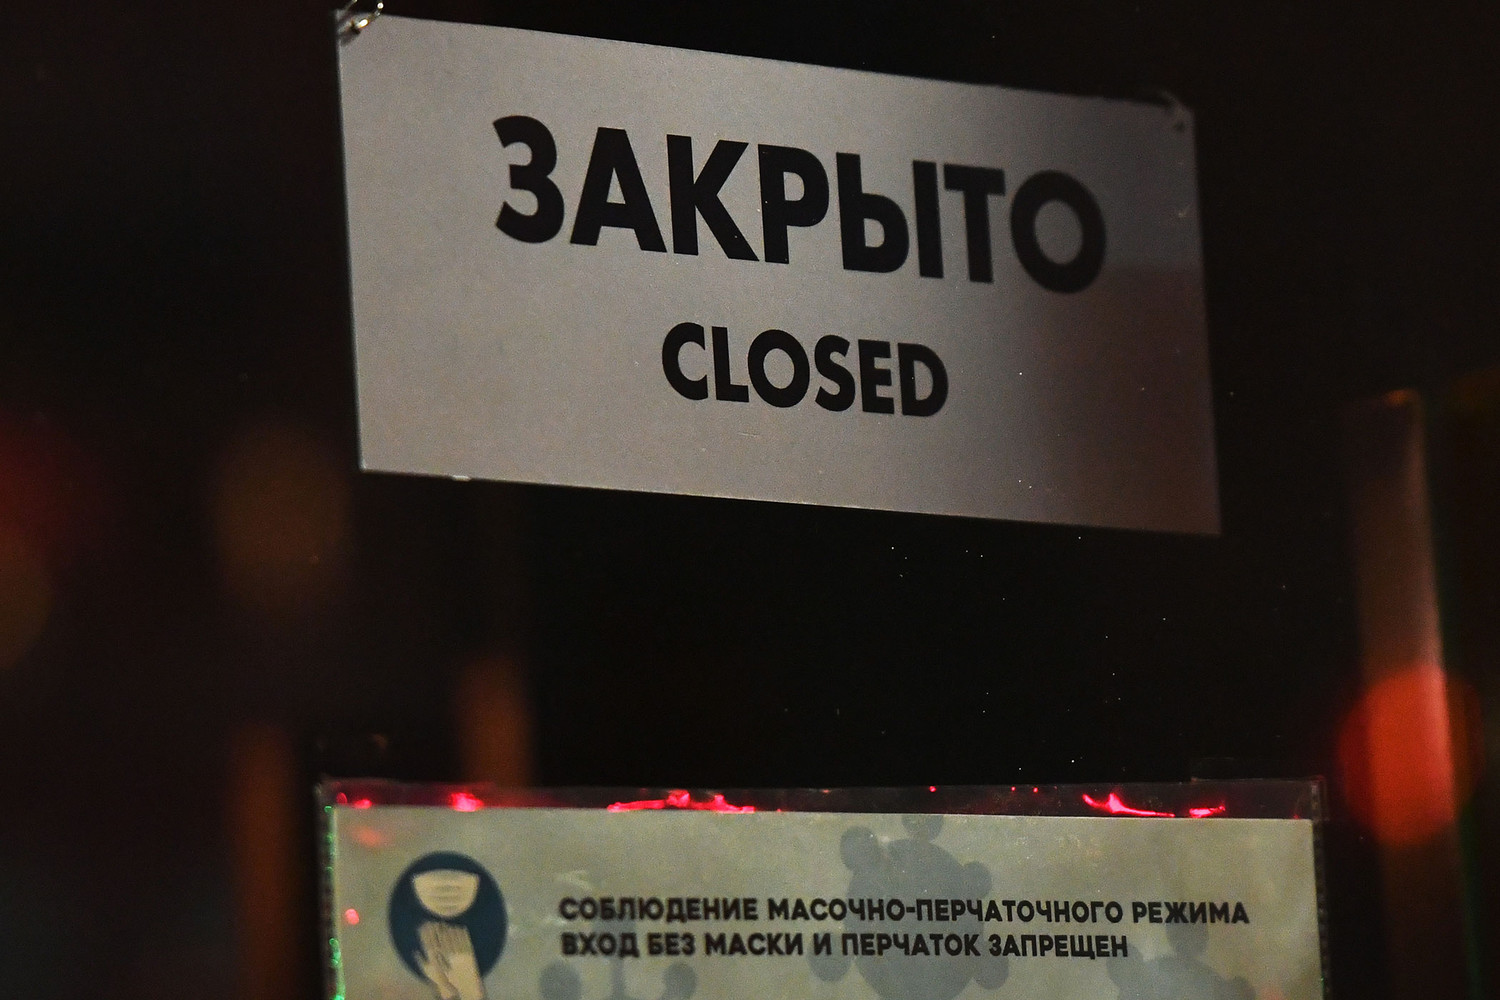 Необходимость нерабочих дней обсудят в передаче «Якутия live: за и против»